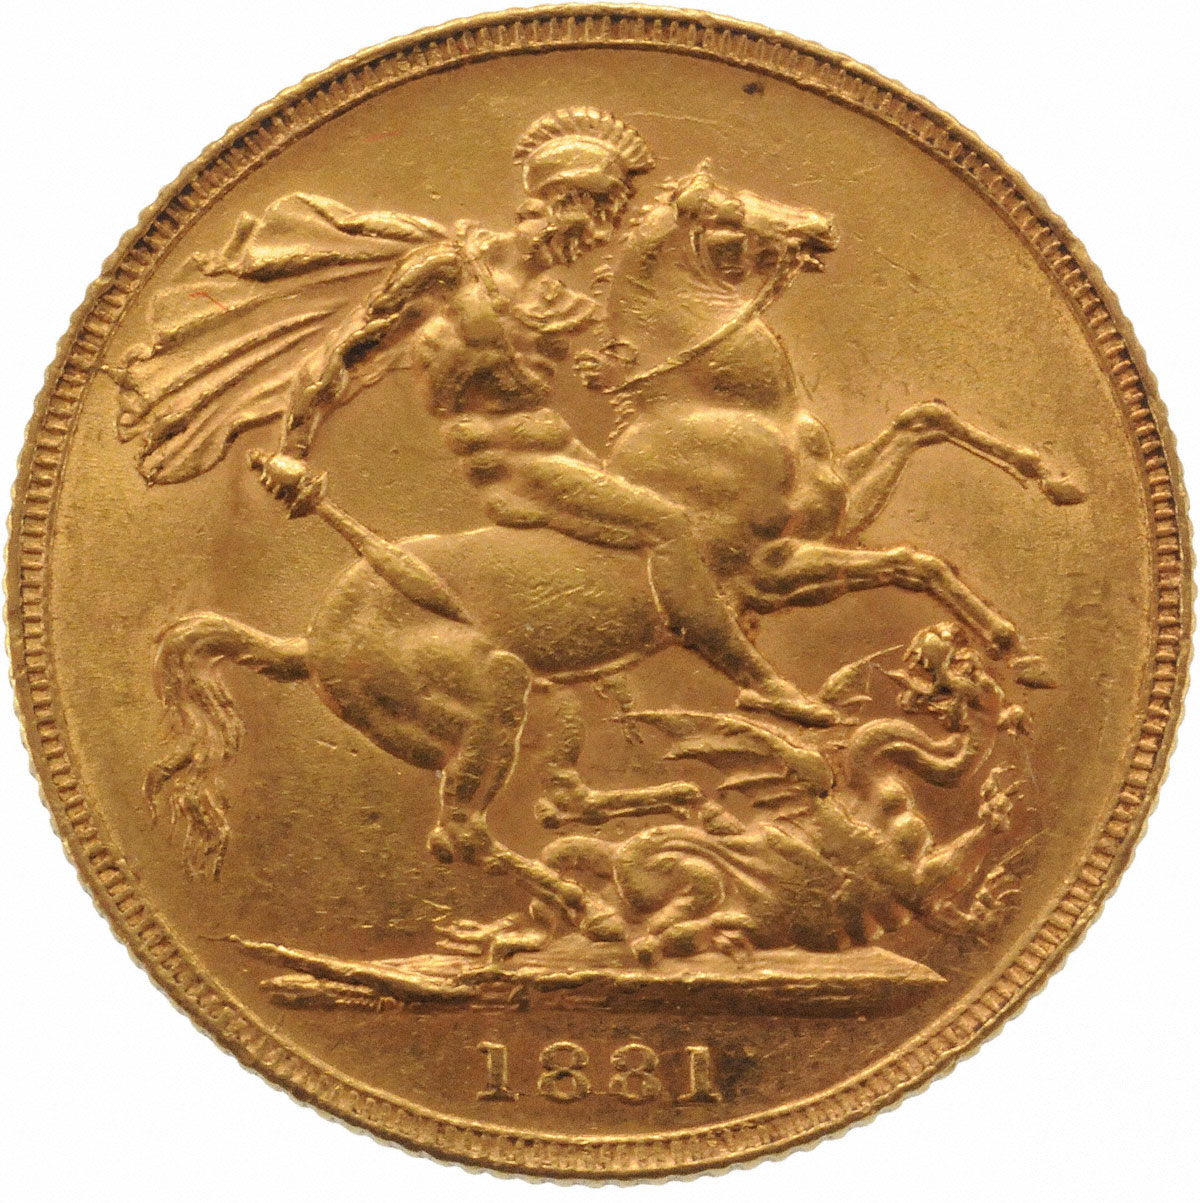 1881 Βικτώρια (Νομισματοκοπείο Σίδνεϊ)